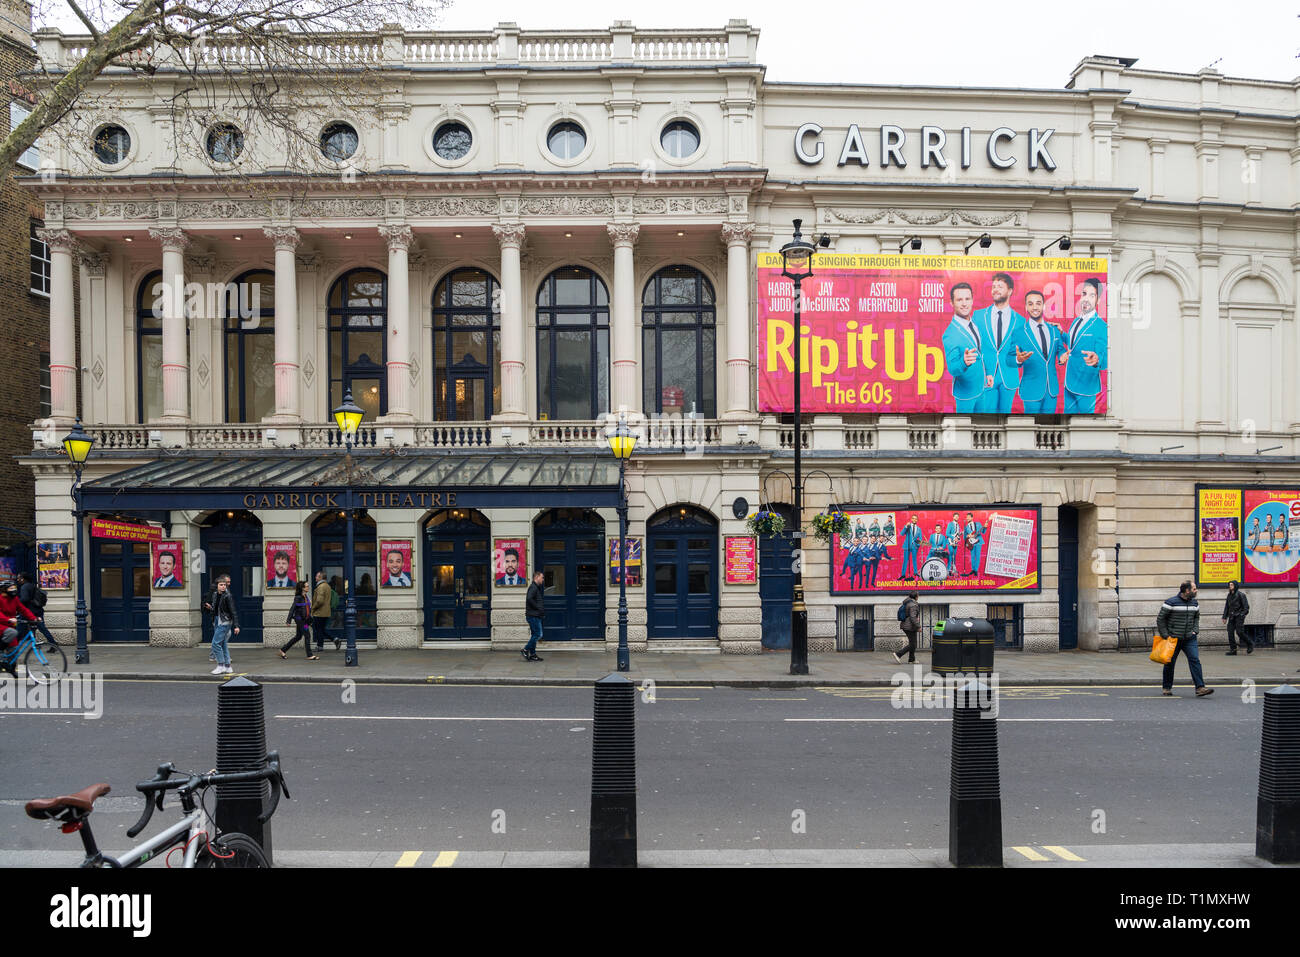 Das Garrick Theatre in Charing Cross Road, London, England, UK. Ein großes buntes Plakat wirbt für die Musical Show Rip It Up. Stockfoto